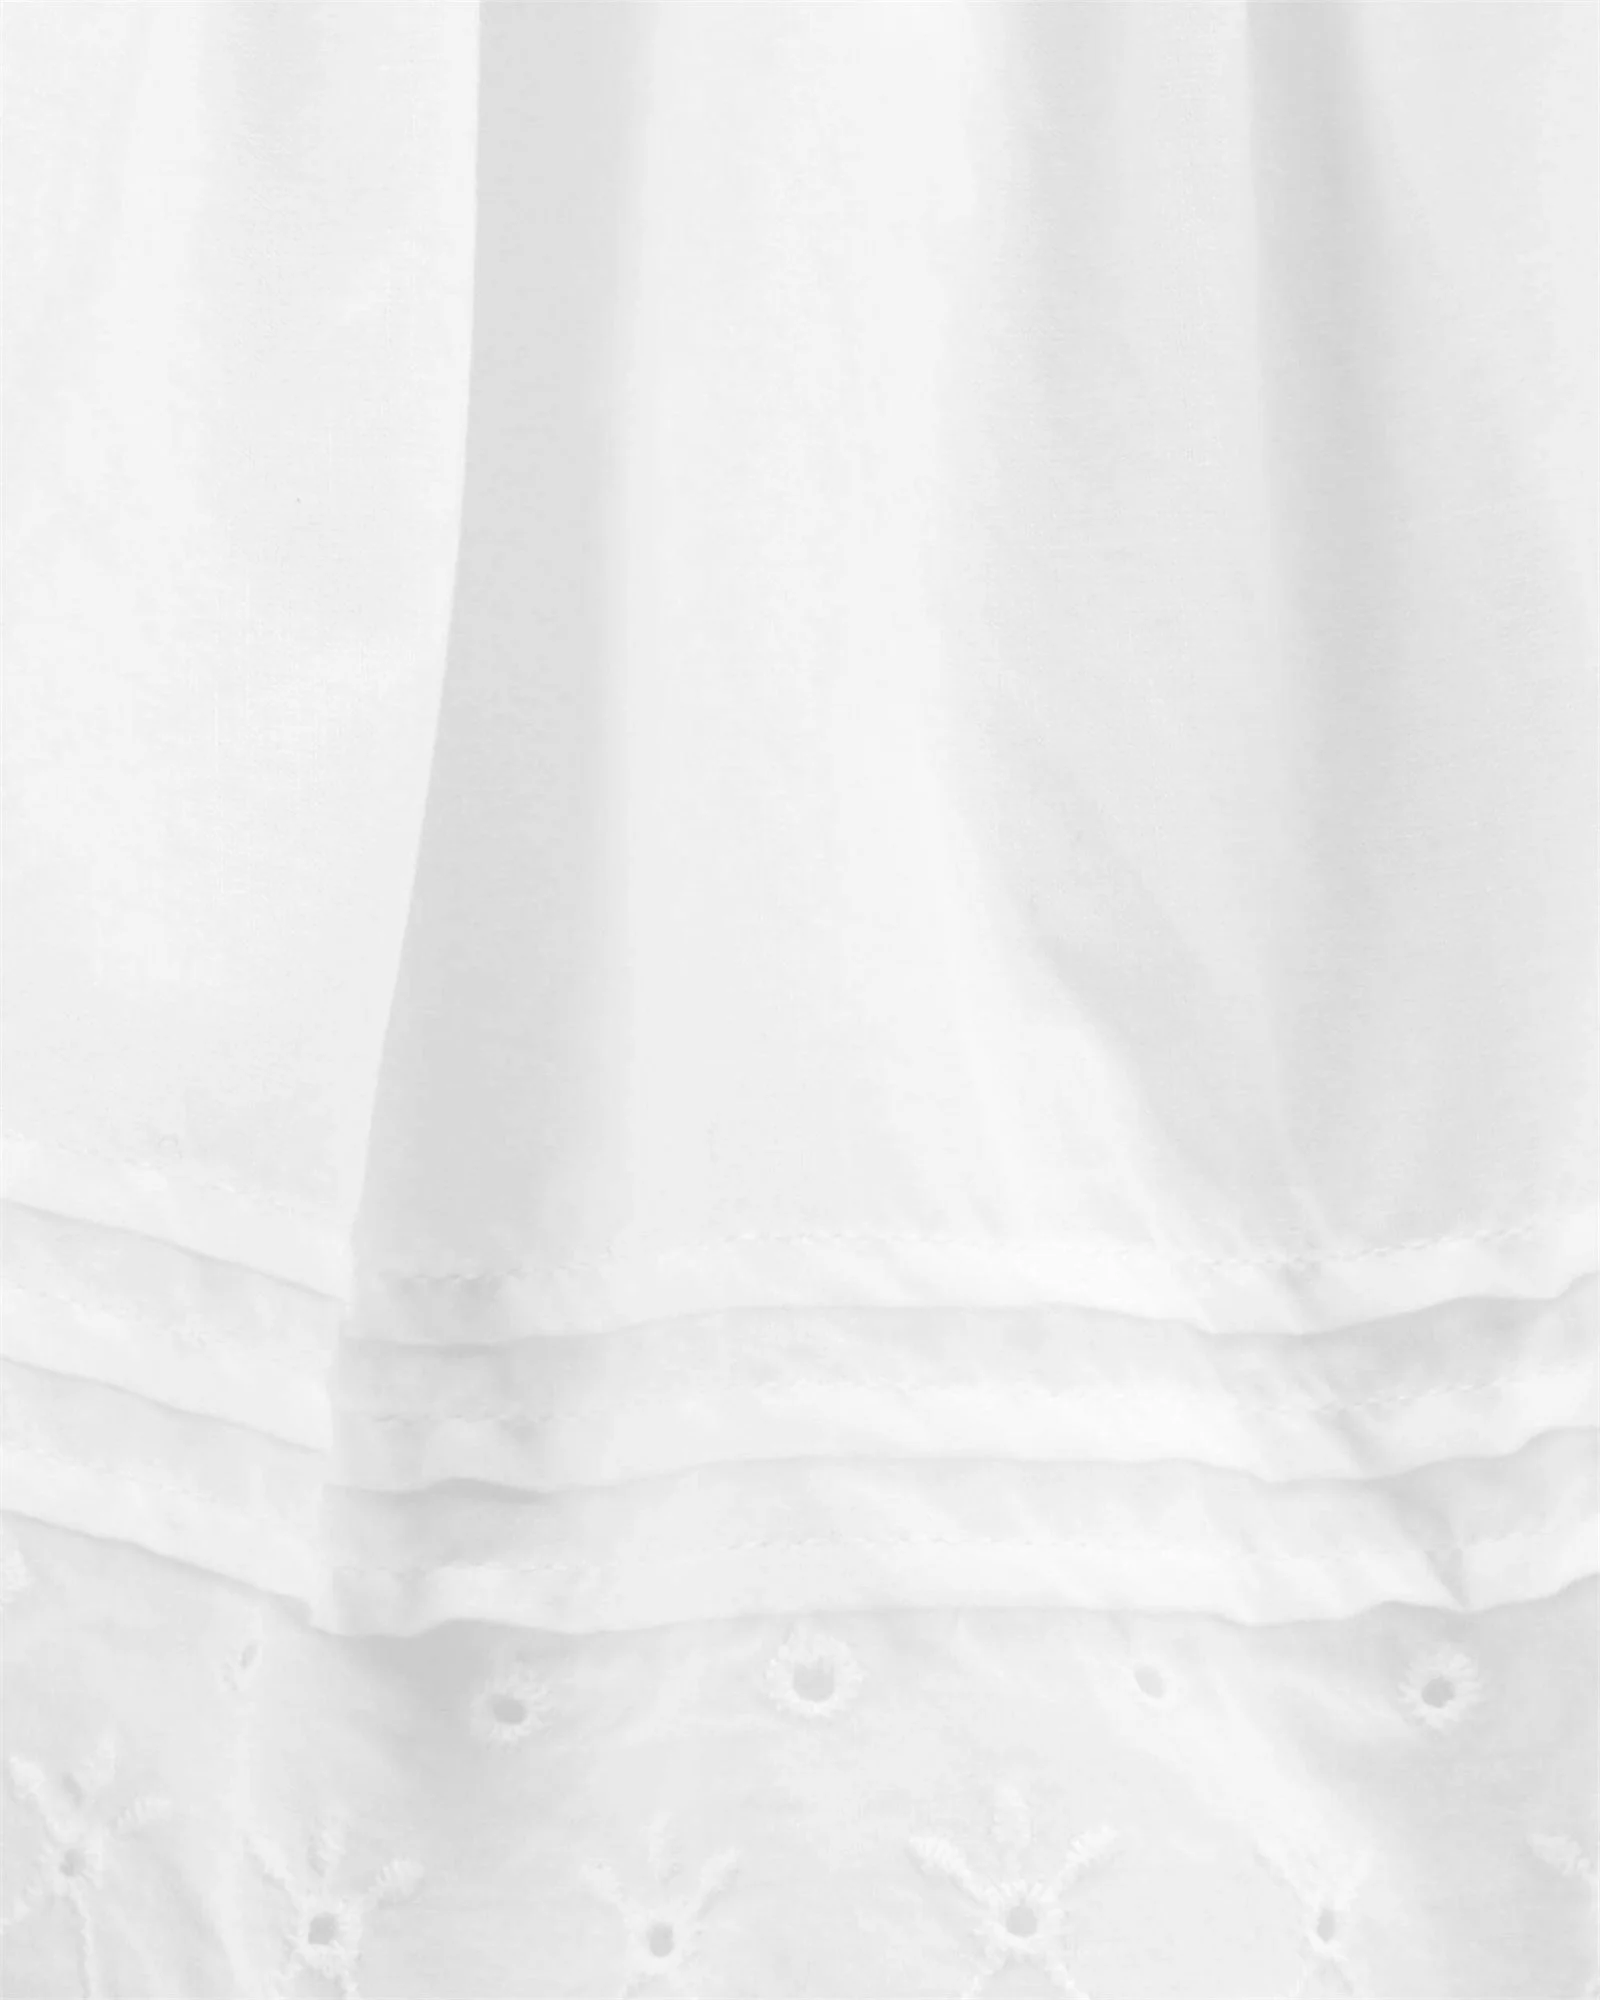 OshKosh Платье белое с вышивкой